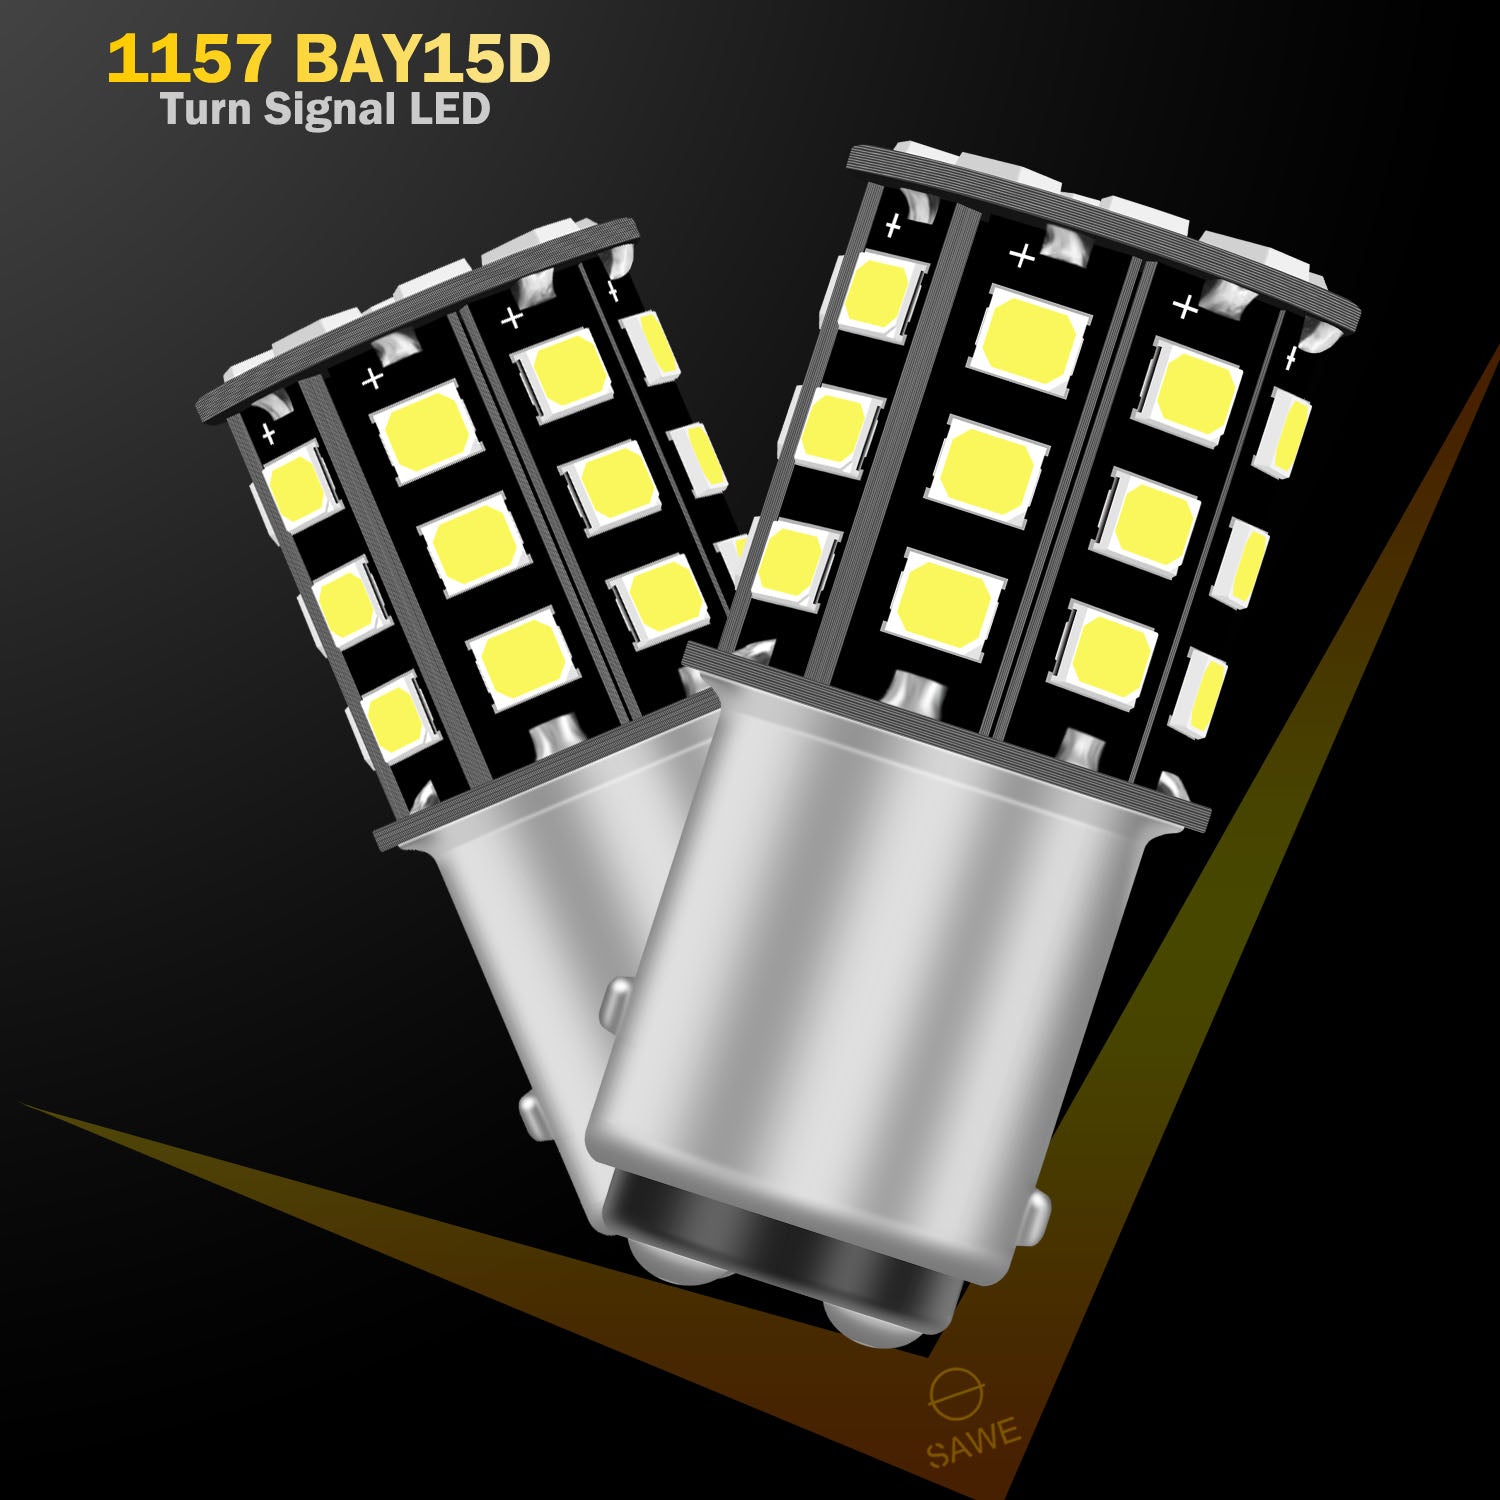 SAWE ® 1157 BAY15D 2057 2357 33-SMD LED Tail Brake Stop Turn Signal Parking Light Bulbs - 6000K White